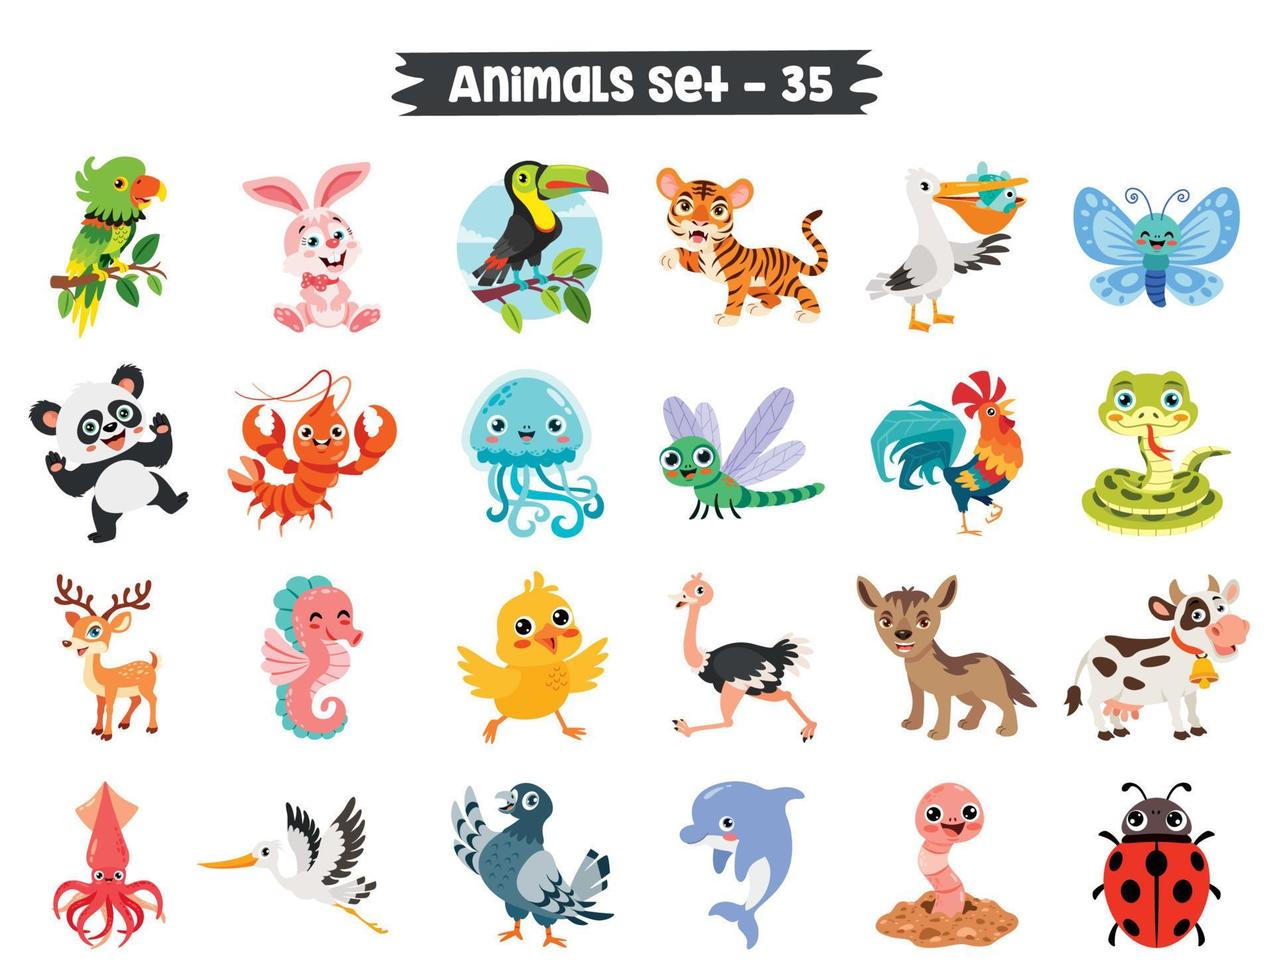 conjunto de lindos animales de dibujos animados vector